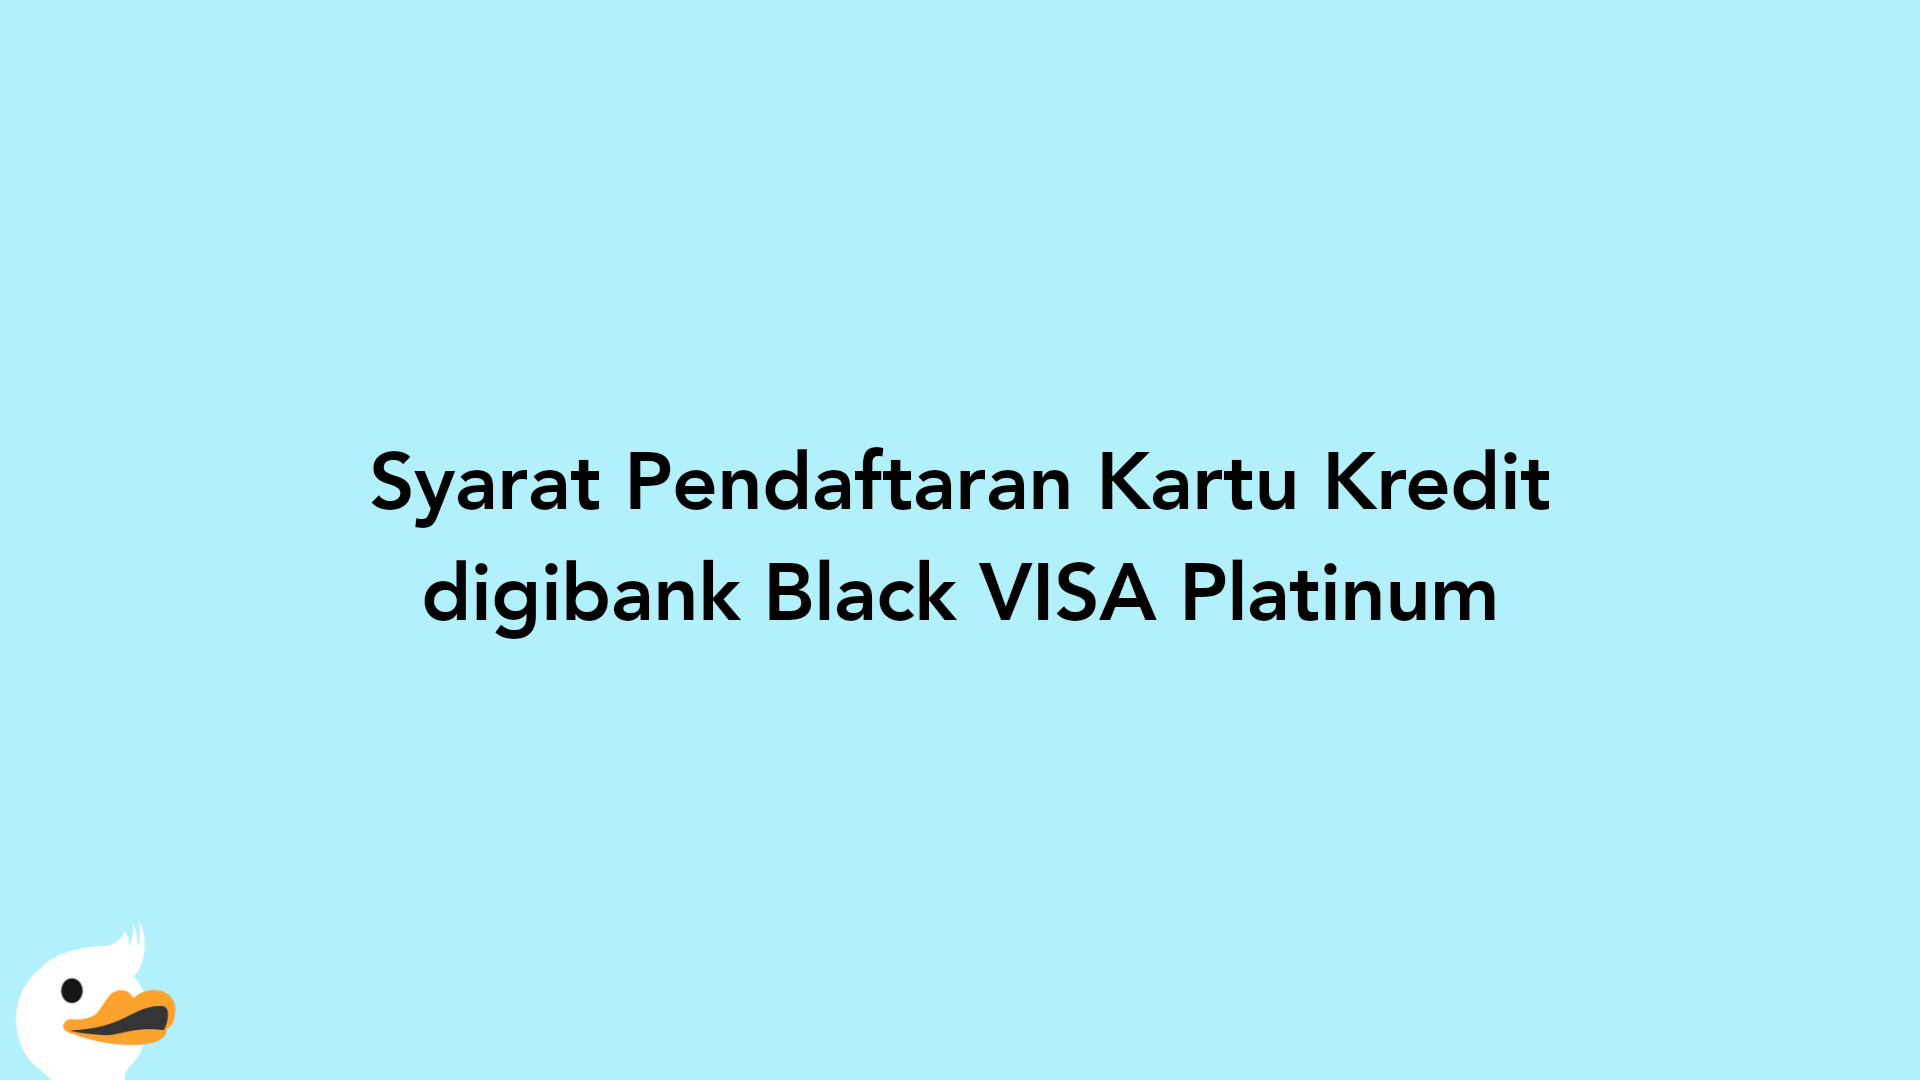 Syarat Pendaftaran Kartu Kredit digibank Black VISA Platinum